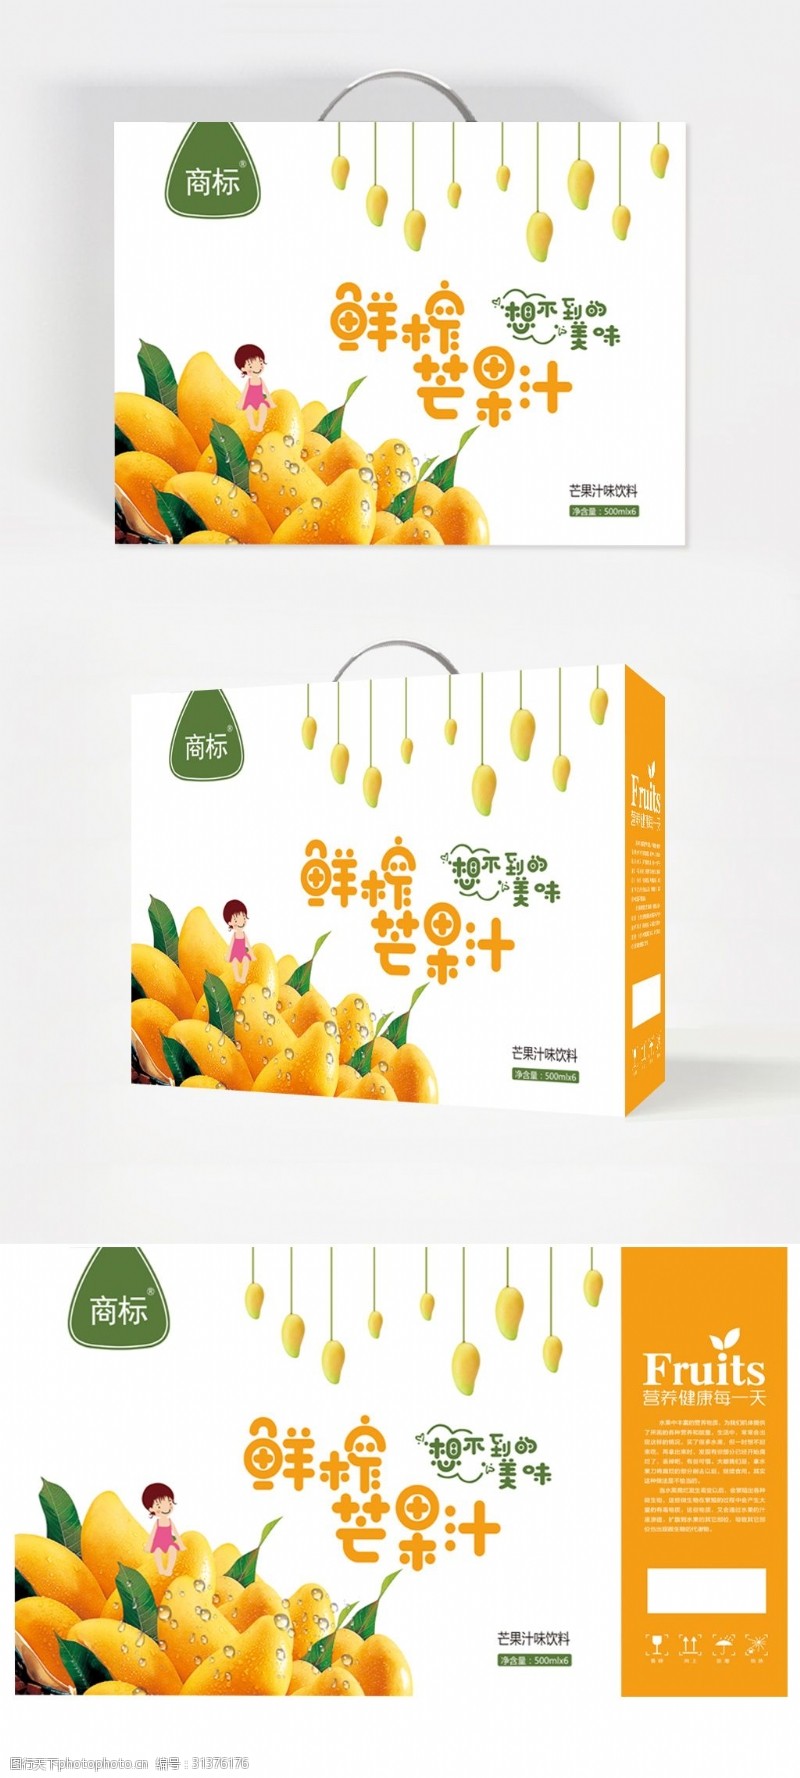 果汁包装盒鲜榨芒果汁手提礼盒设计